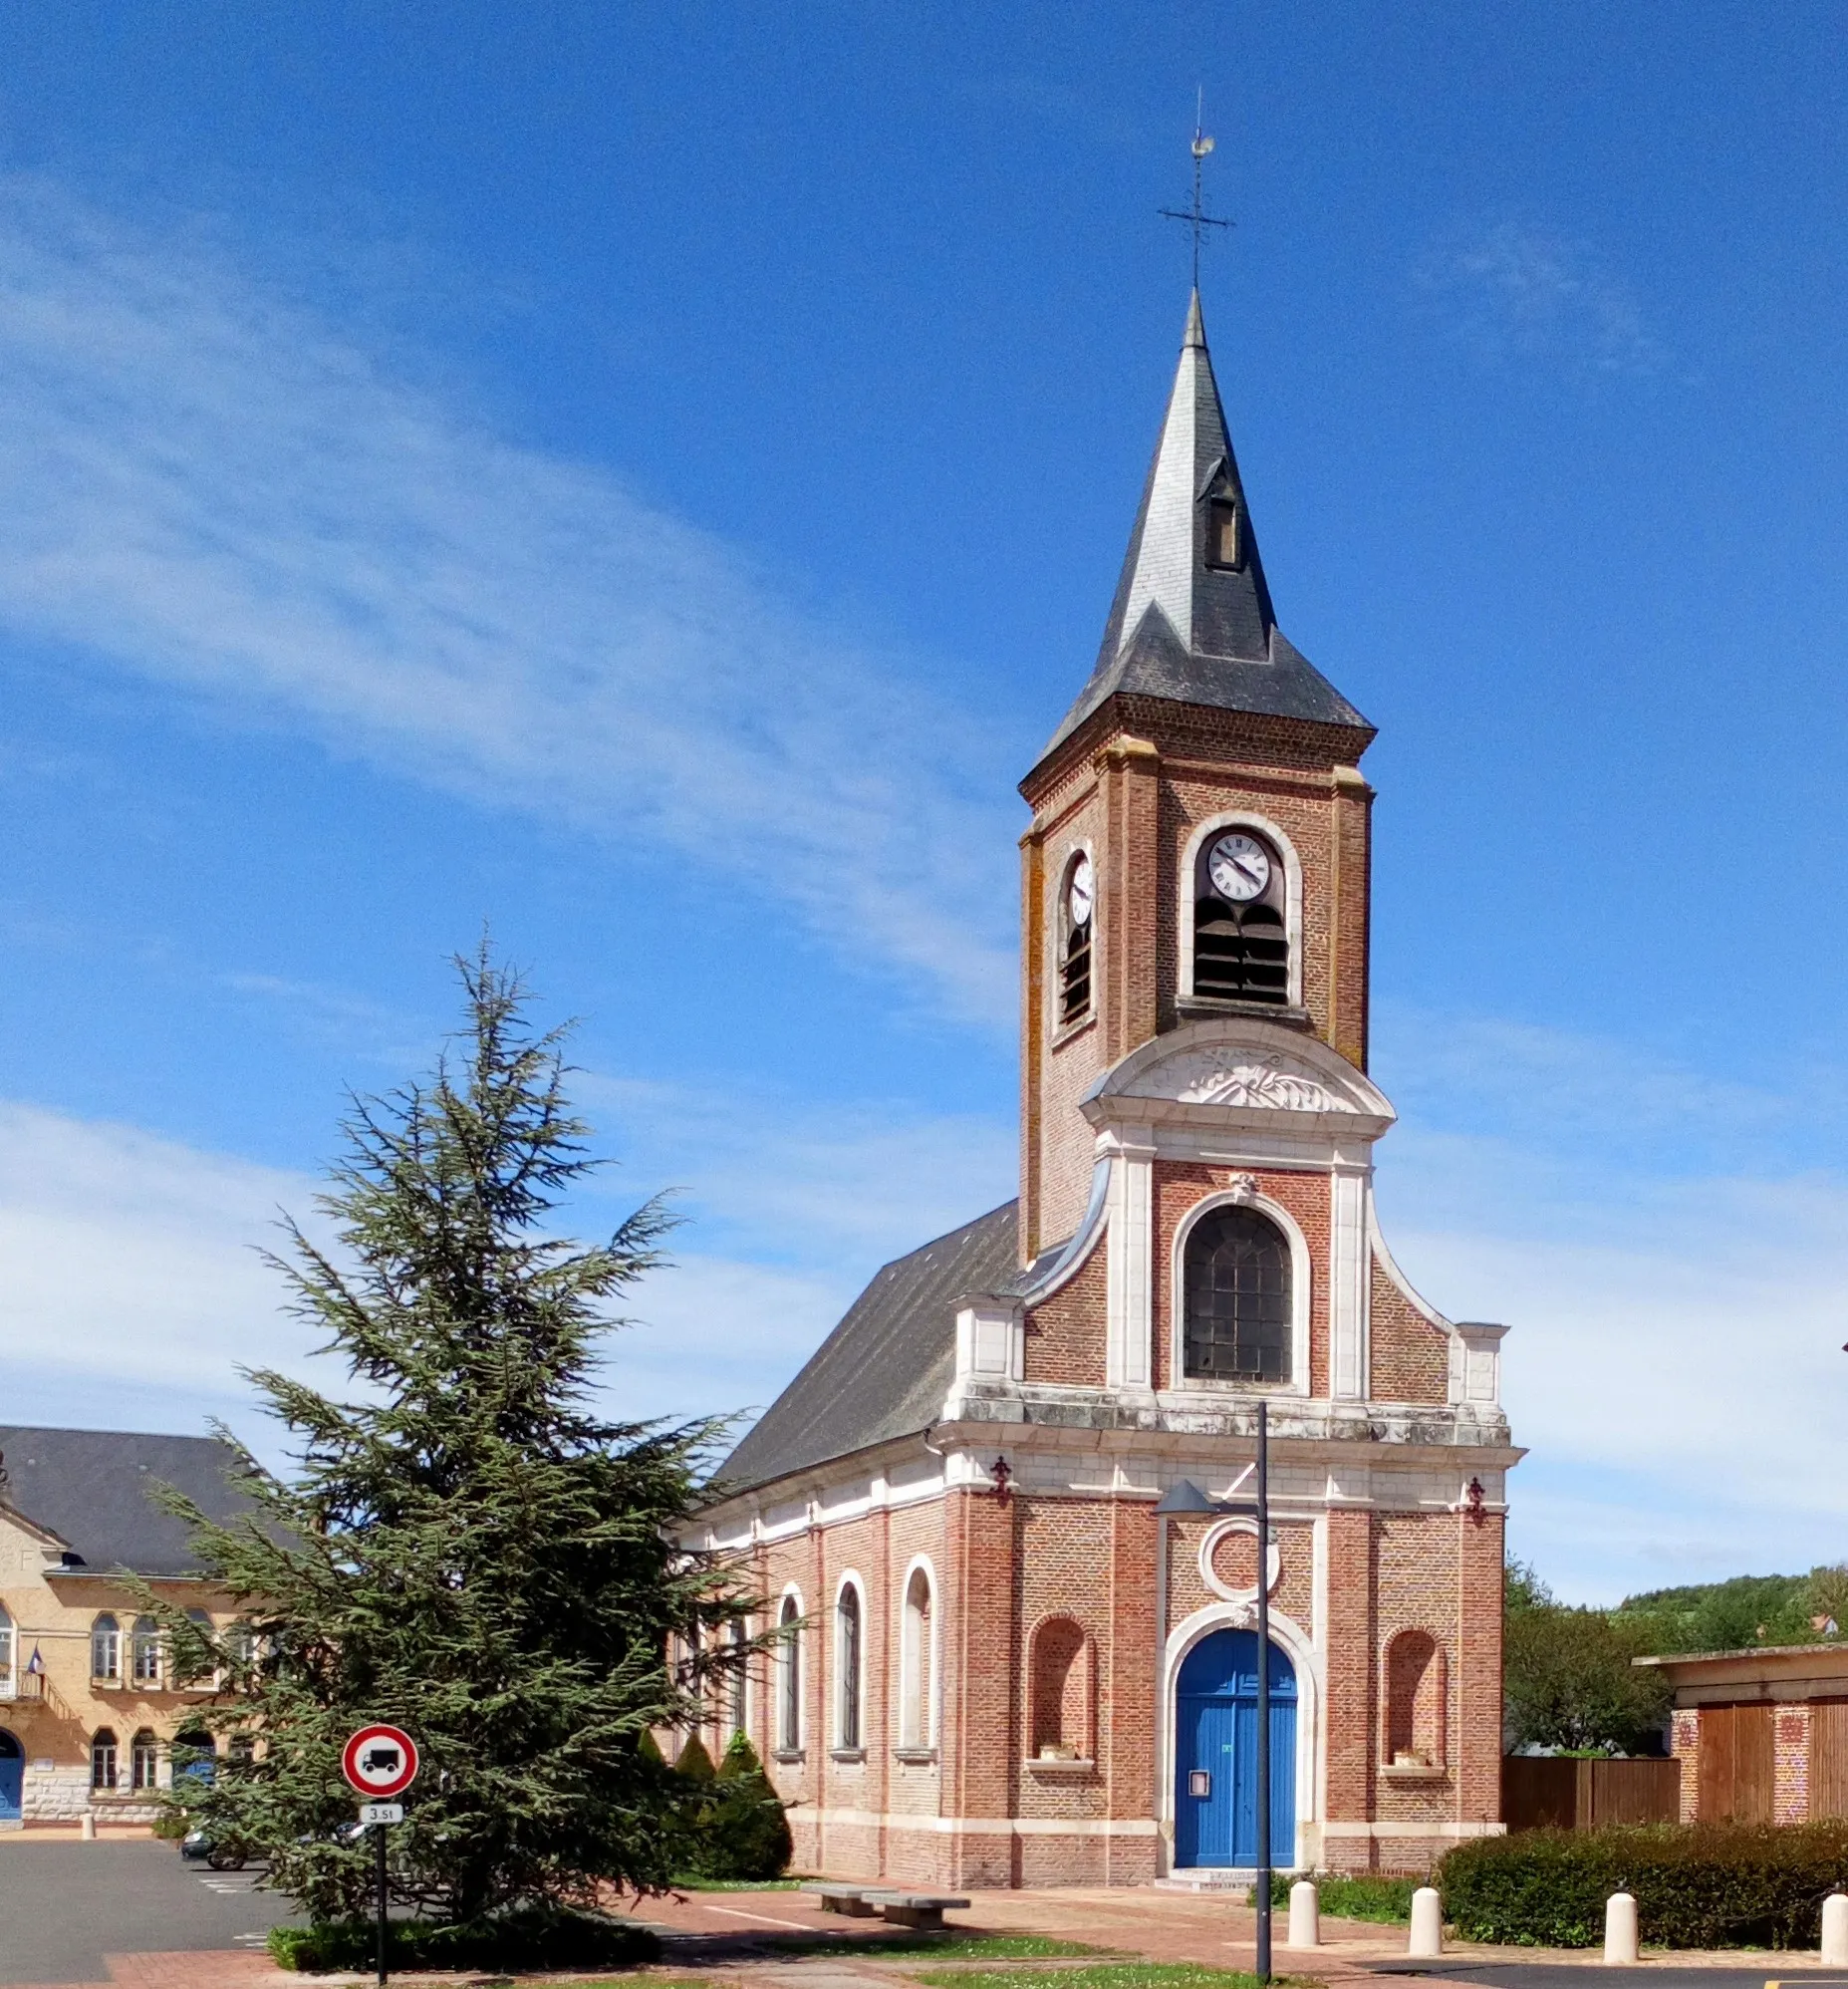 Image de Saint-Léger-lès-Domart